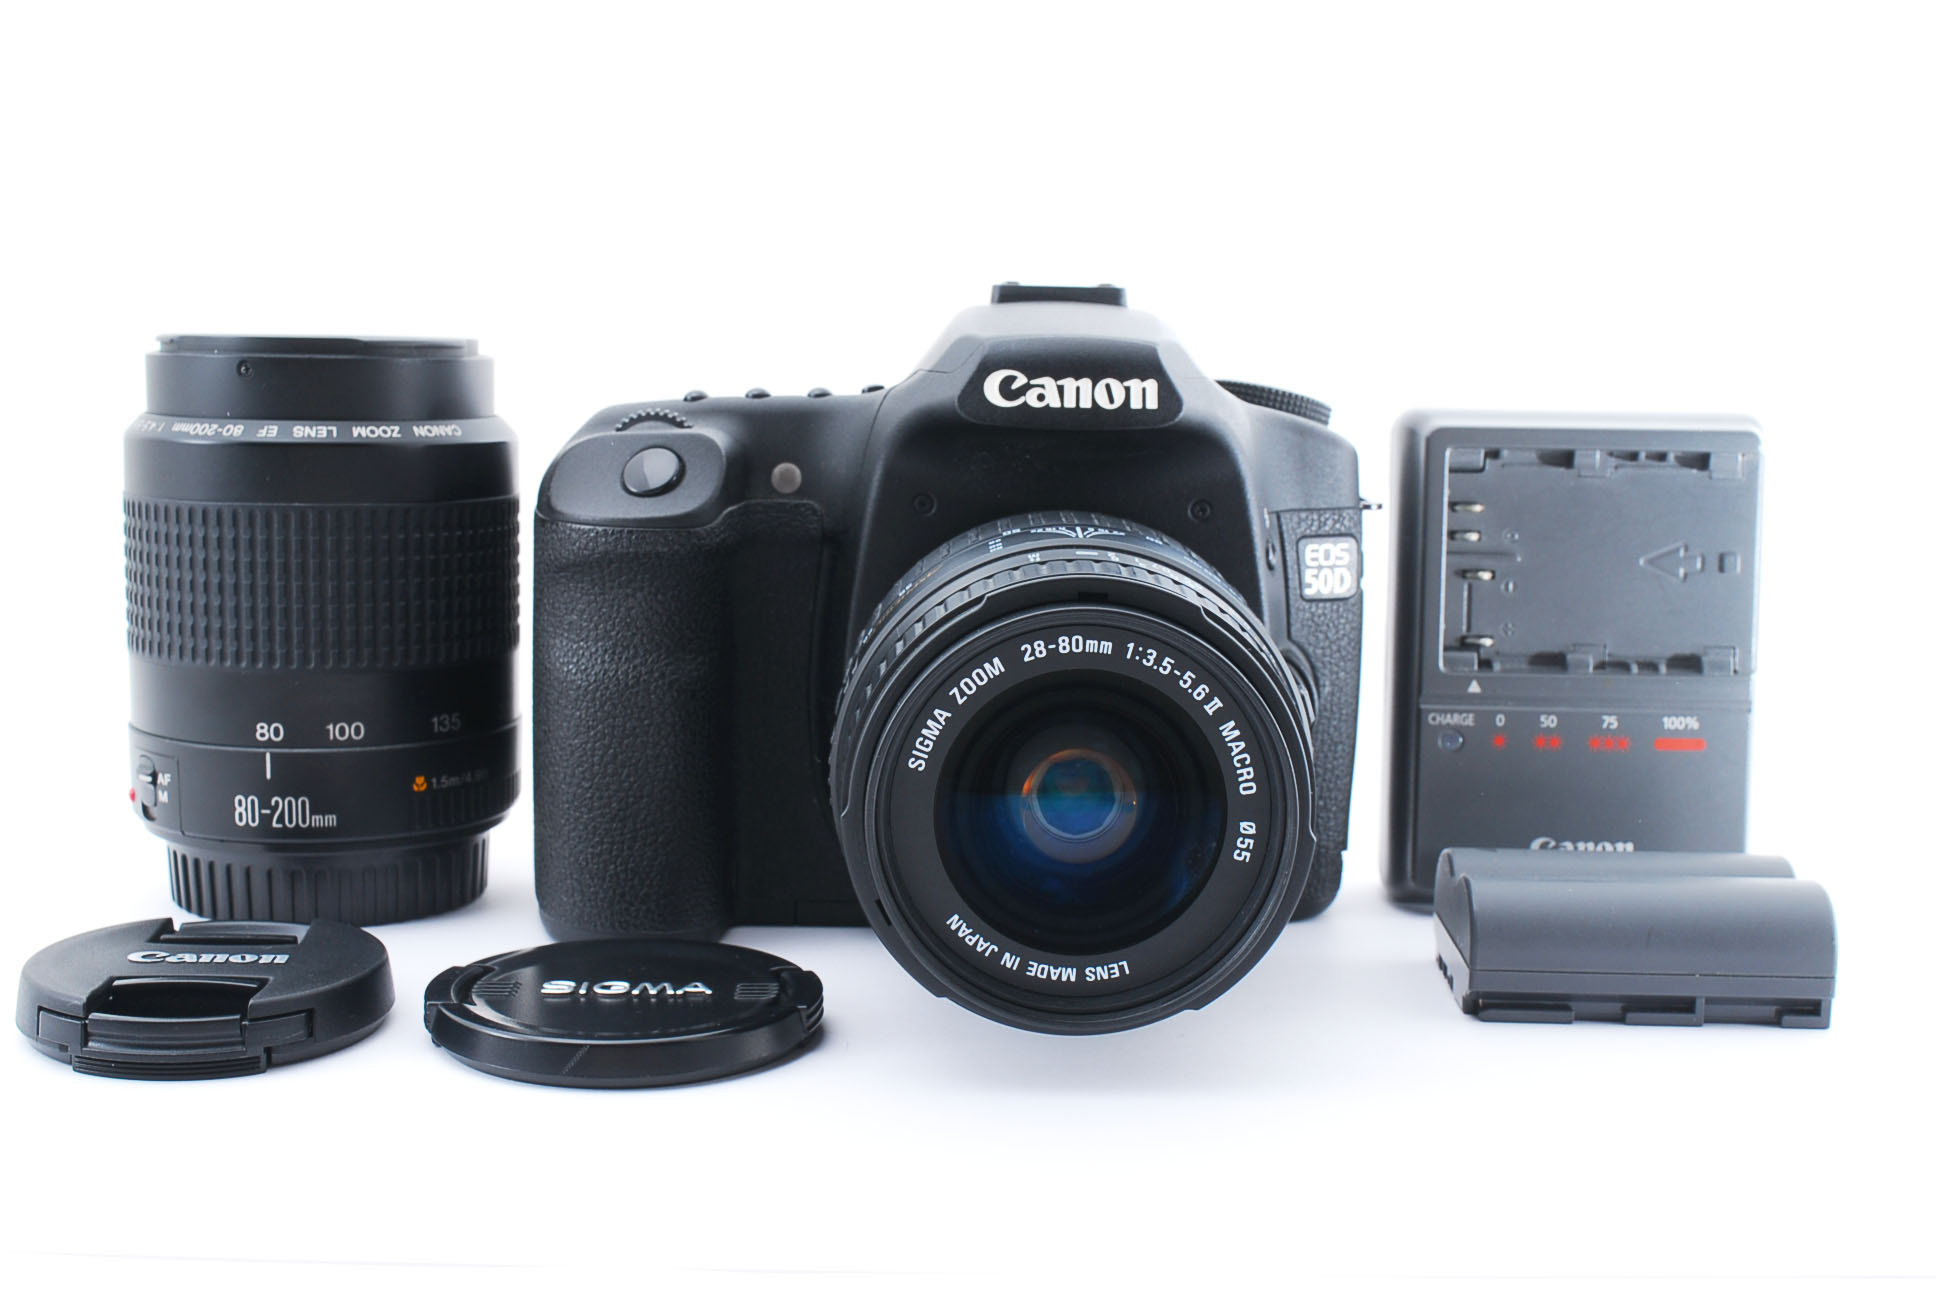 【中古】Canon キヤノンEOS50D シグマ 28-80mm EF 80-200mm F4.5-5.6 2 オリジナルダブルズームキット